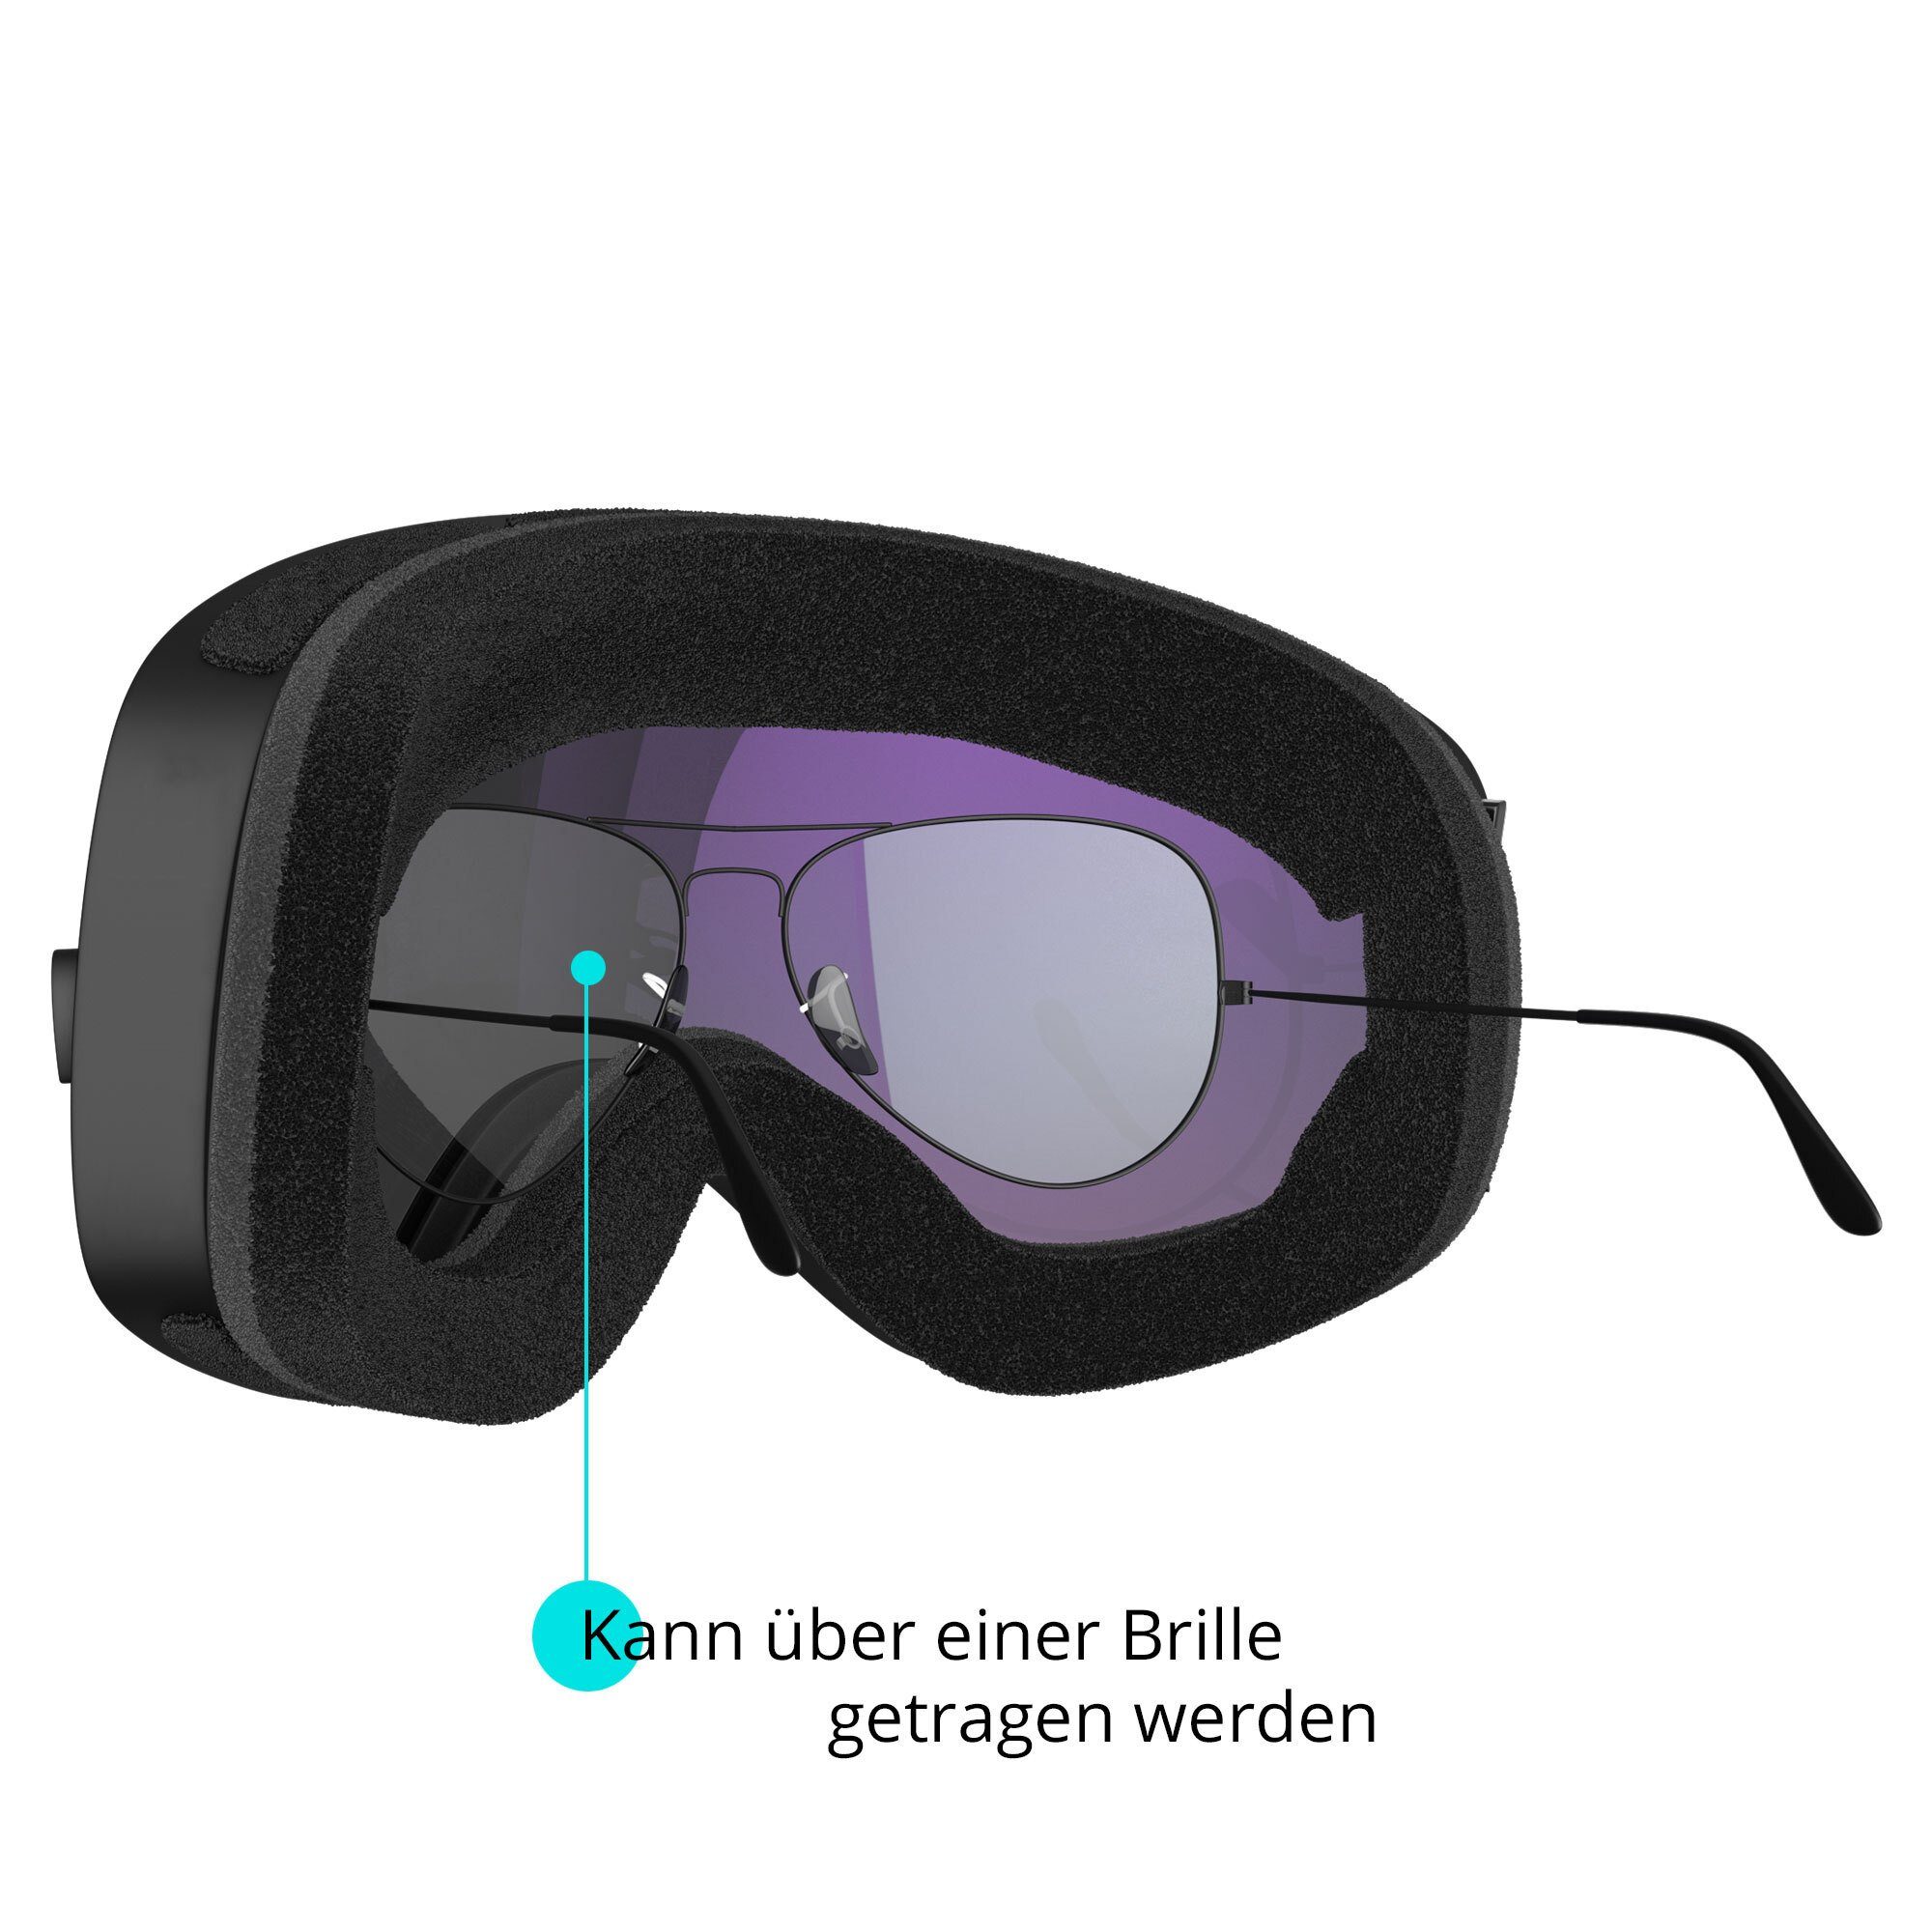 Kinder Accessoires YEAZ Skibrille TWEAK-X, Premium-Ski- und Snowboardbrille für Erwachsene und Jugendliche